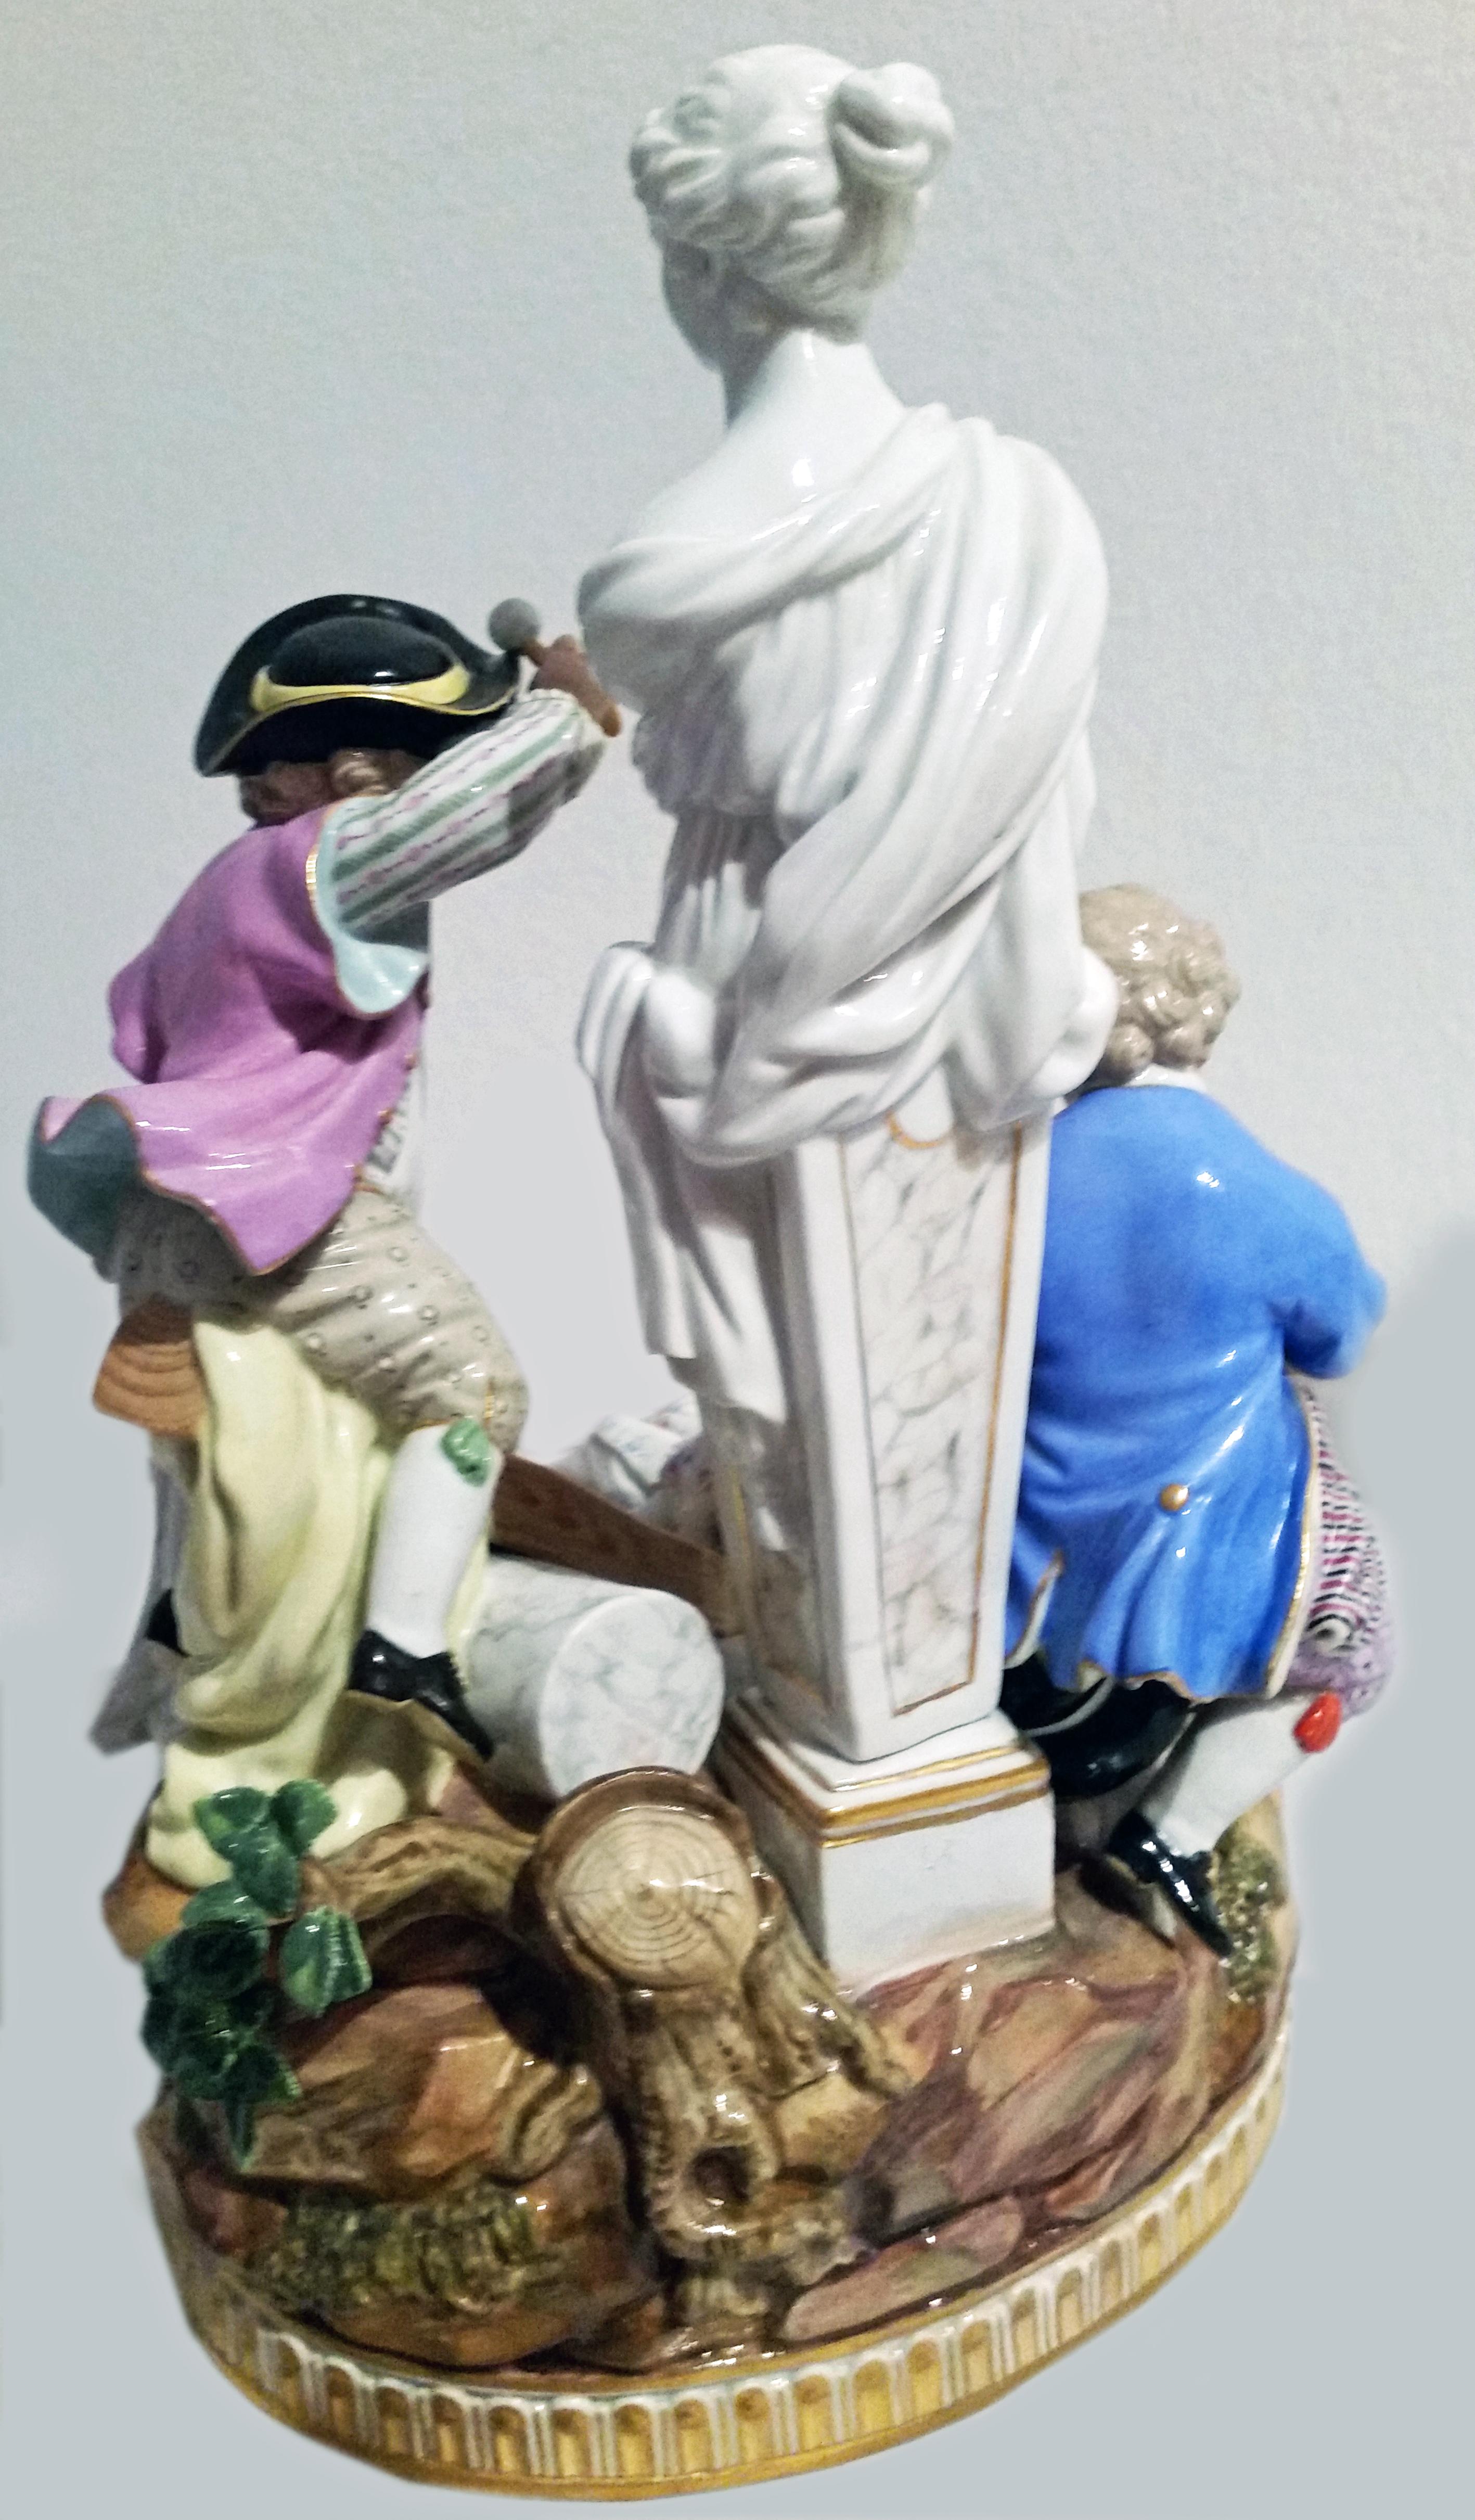 Meißner Prunkfigurengruppe: Putten mit Schaukel
Die Details sind verblüffend plastisch ausgearbeitet = Modellierung vom Feinsten!

Entwurf:
Michel Victor Acier (1736-1799) / Modell G 32 von 1780
Der Bildhauer wurde in Versailles / Frankreich